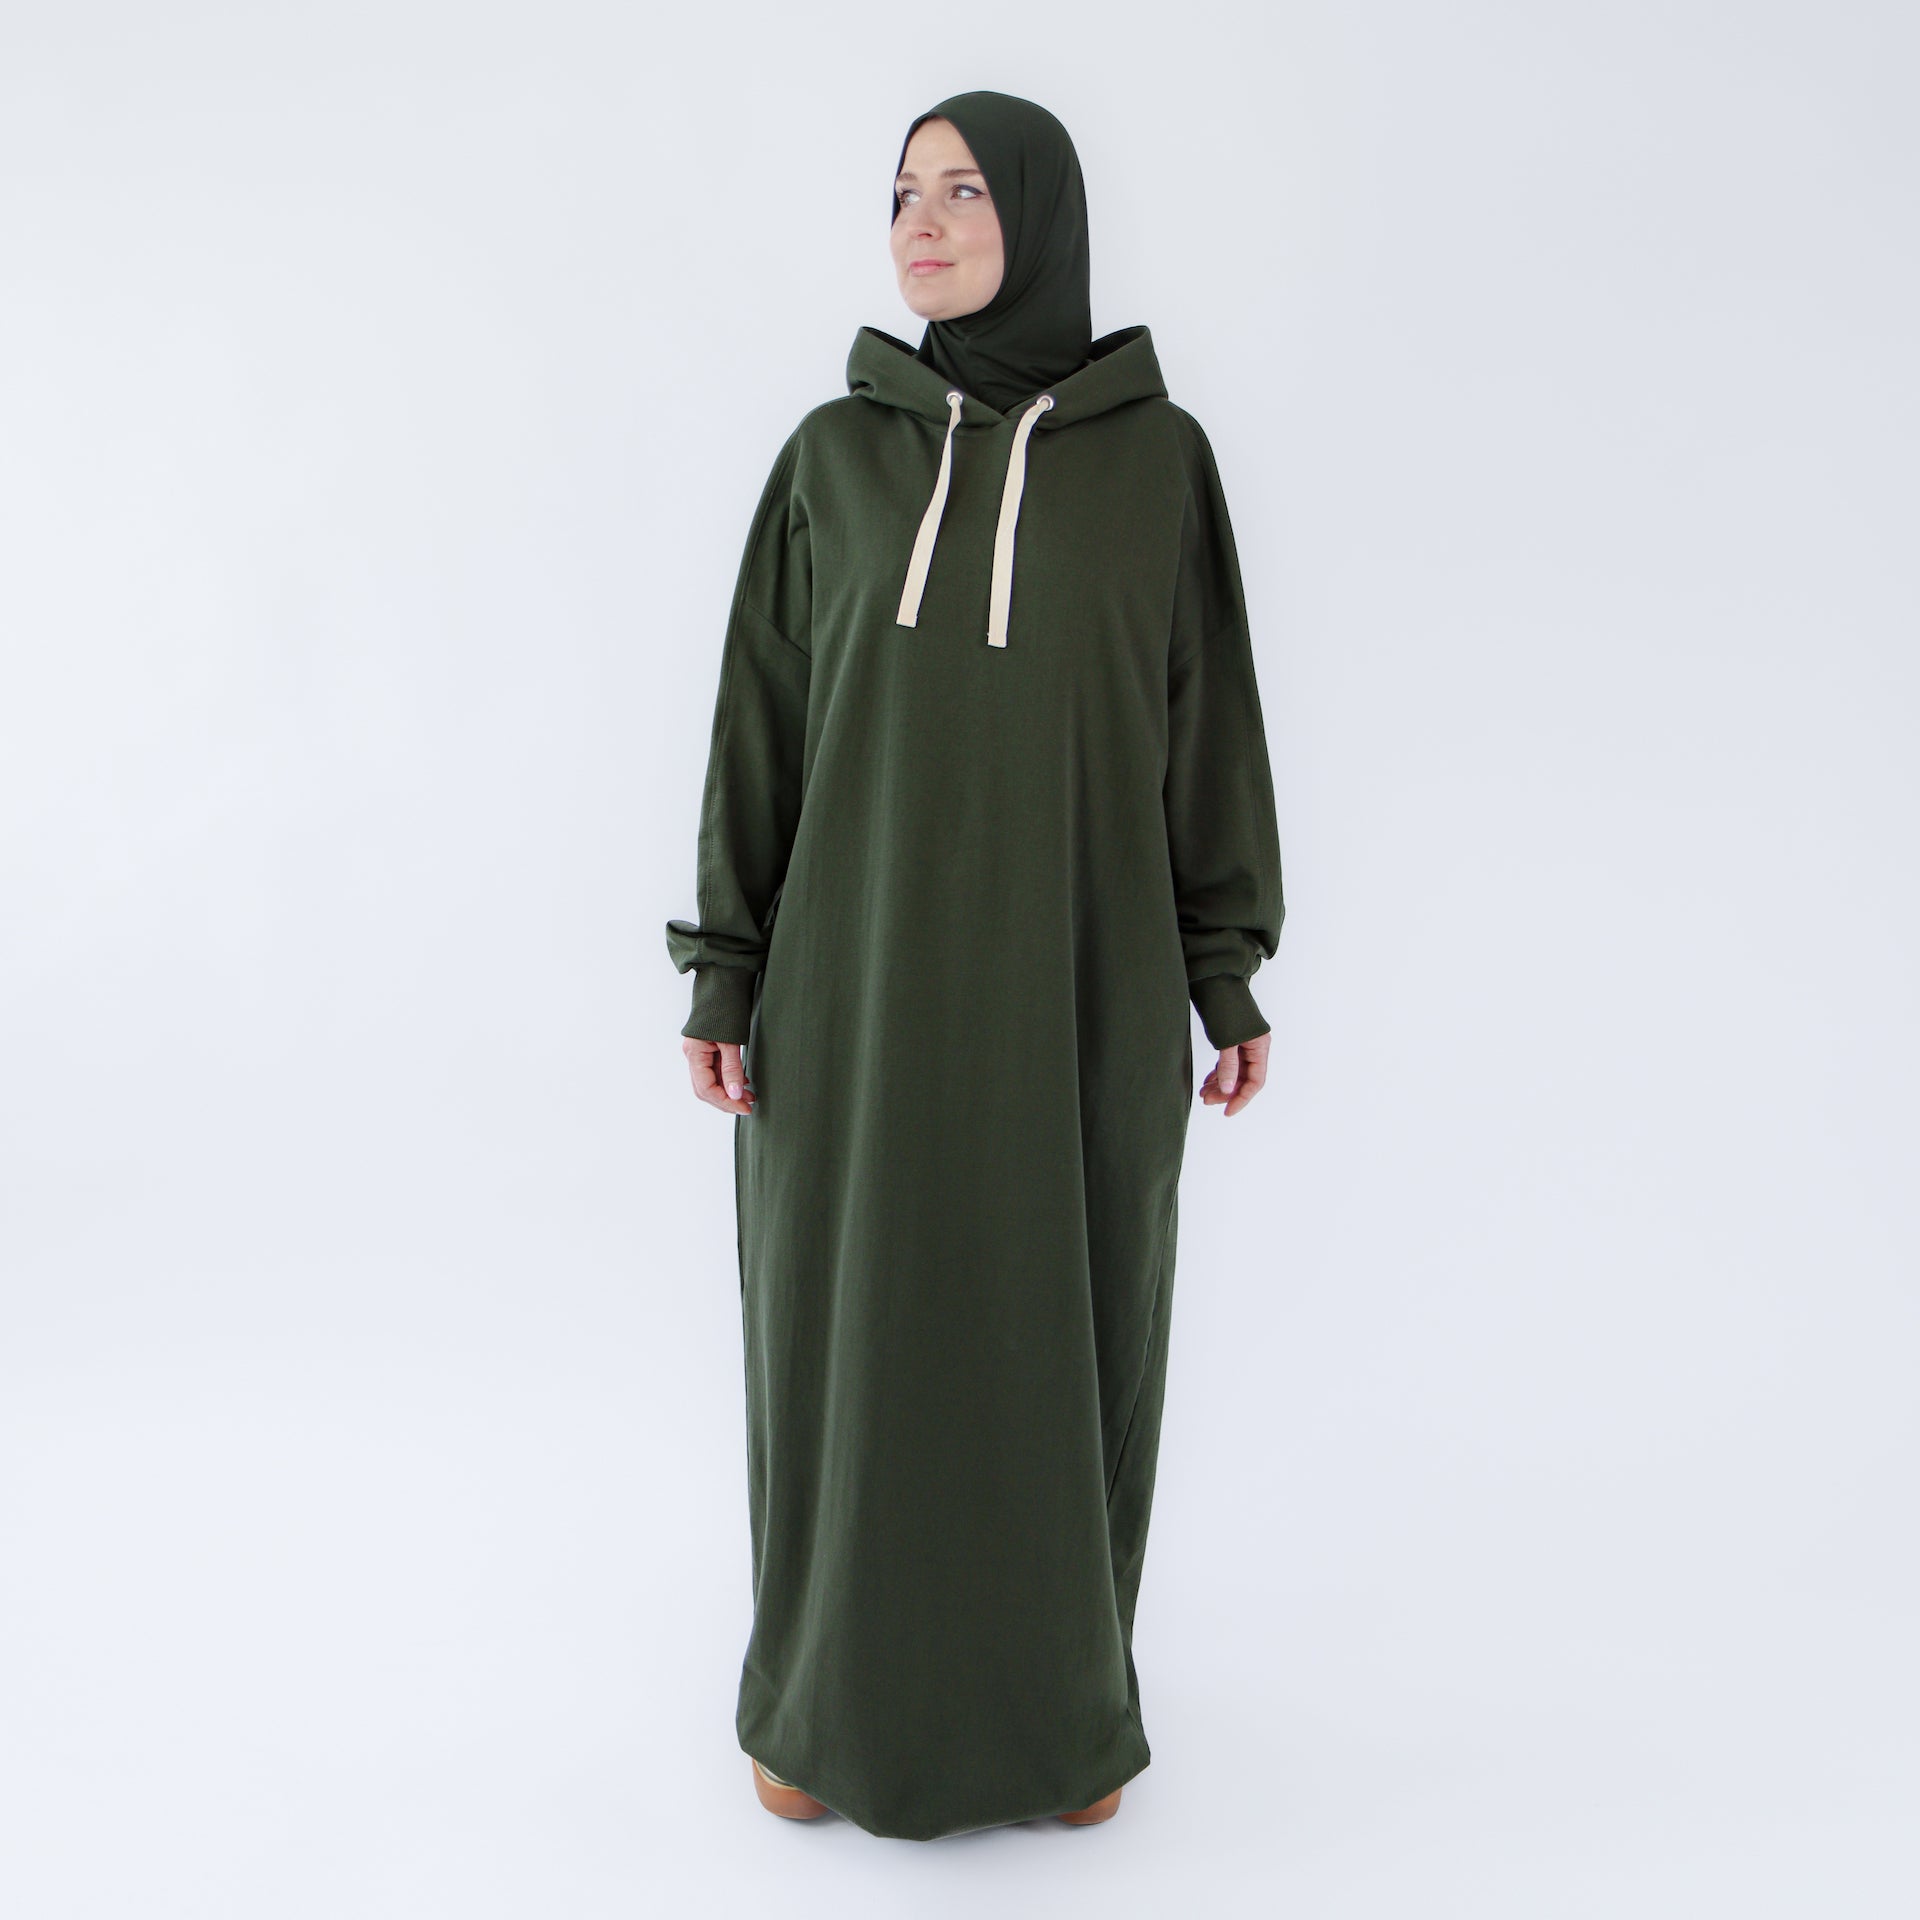 Muslim dress for women "Khaki Oasis" abaya dress style